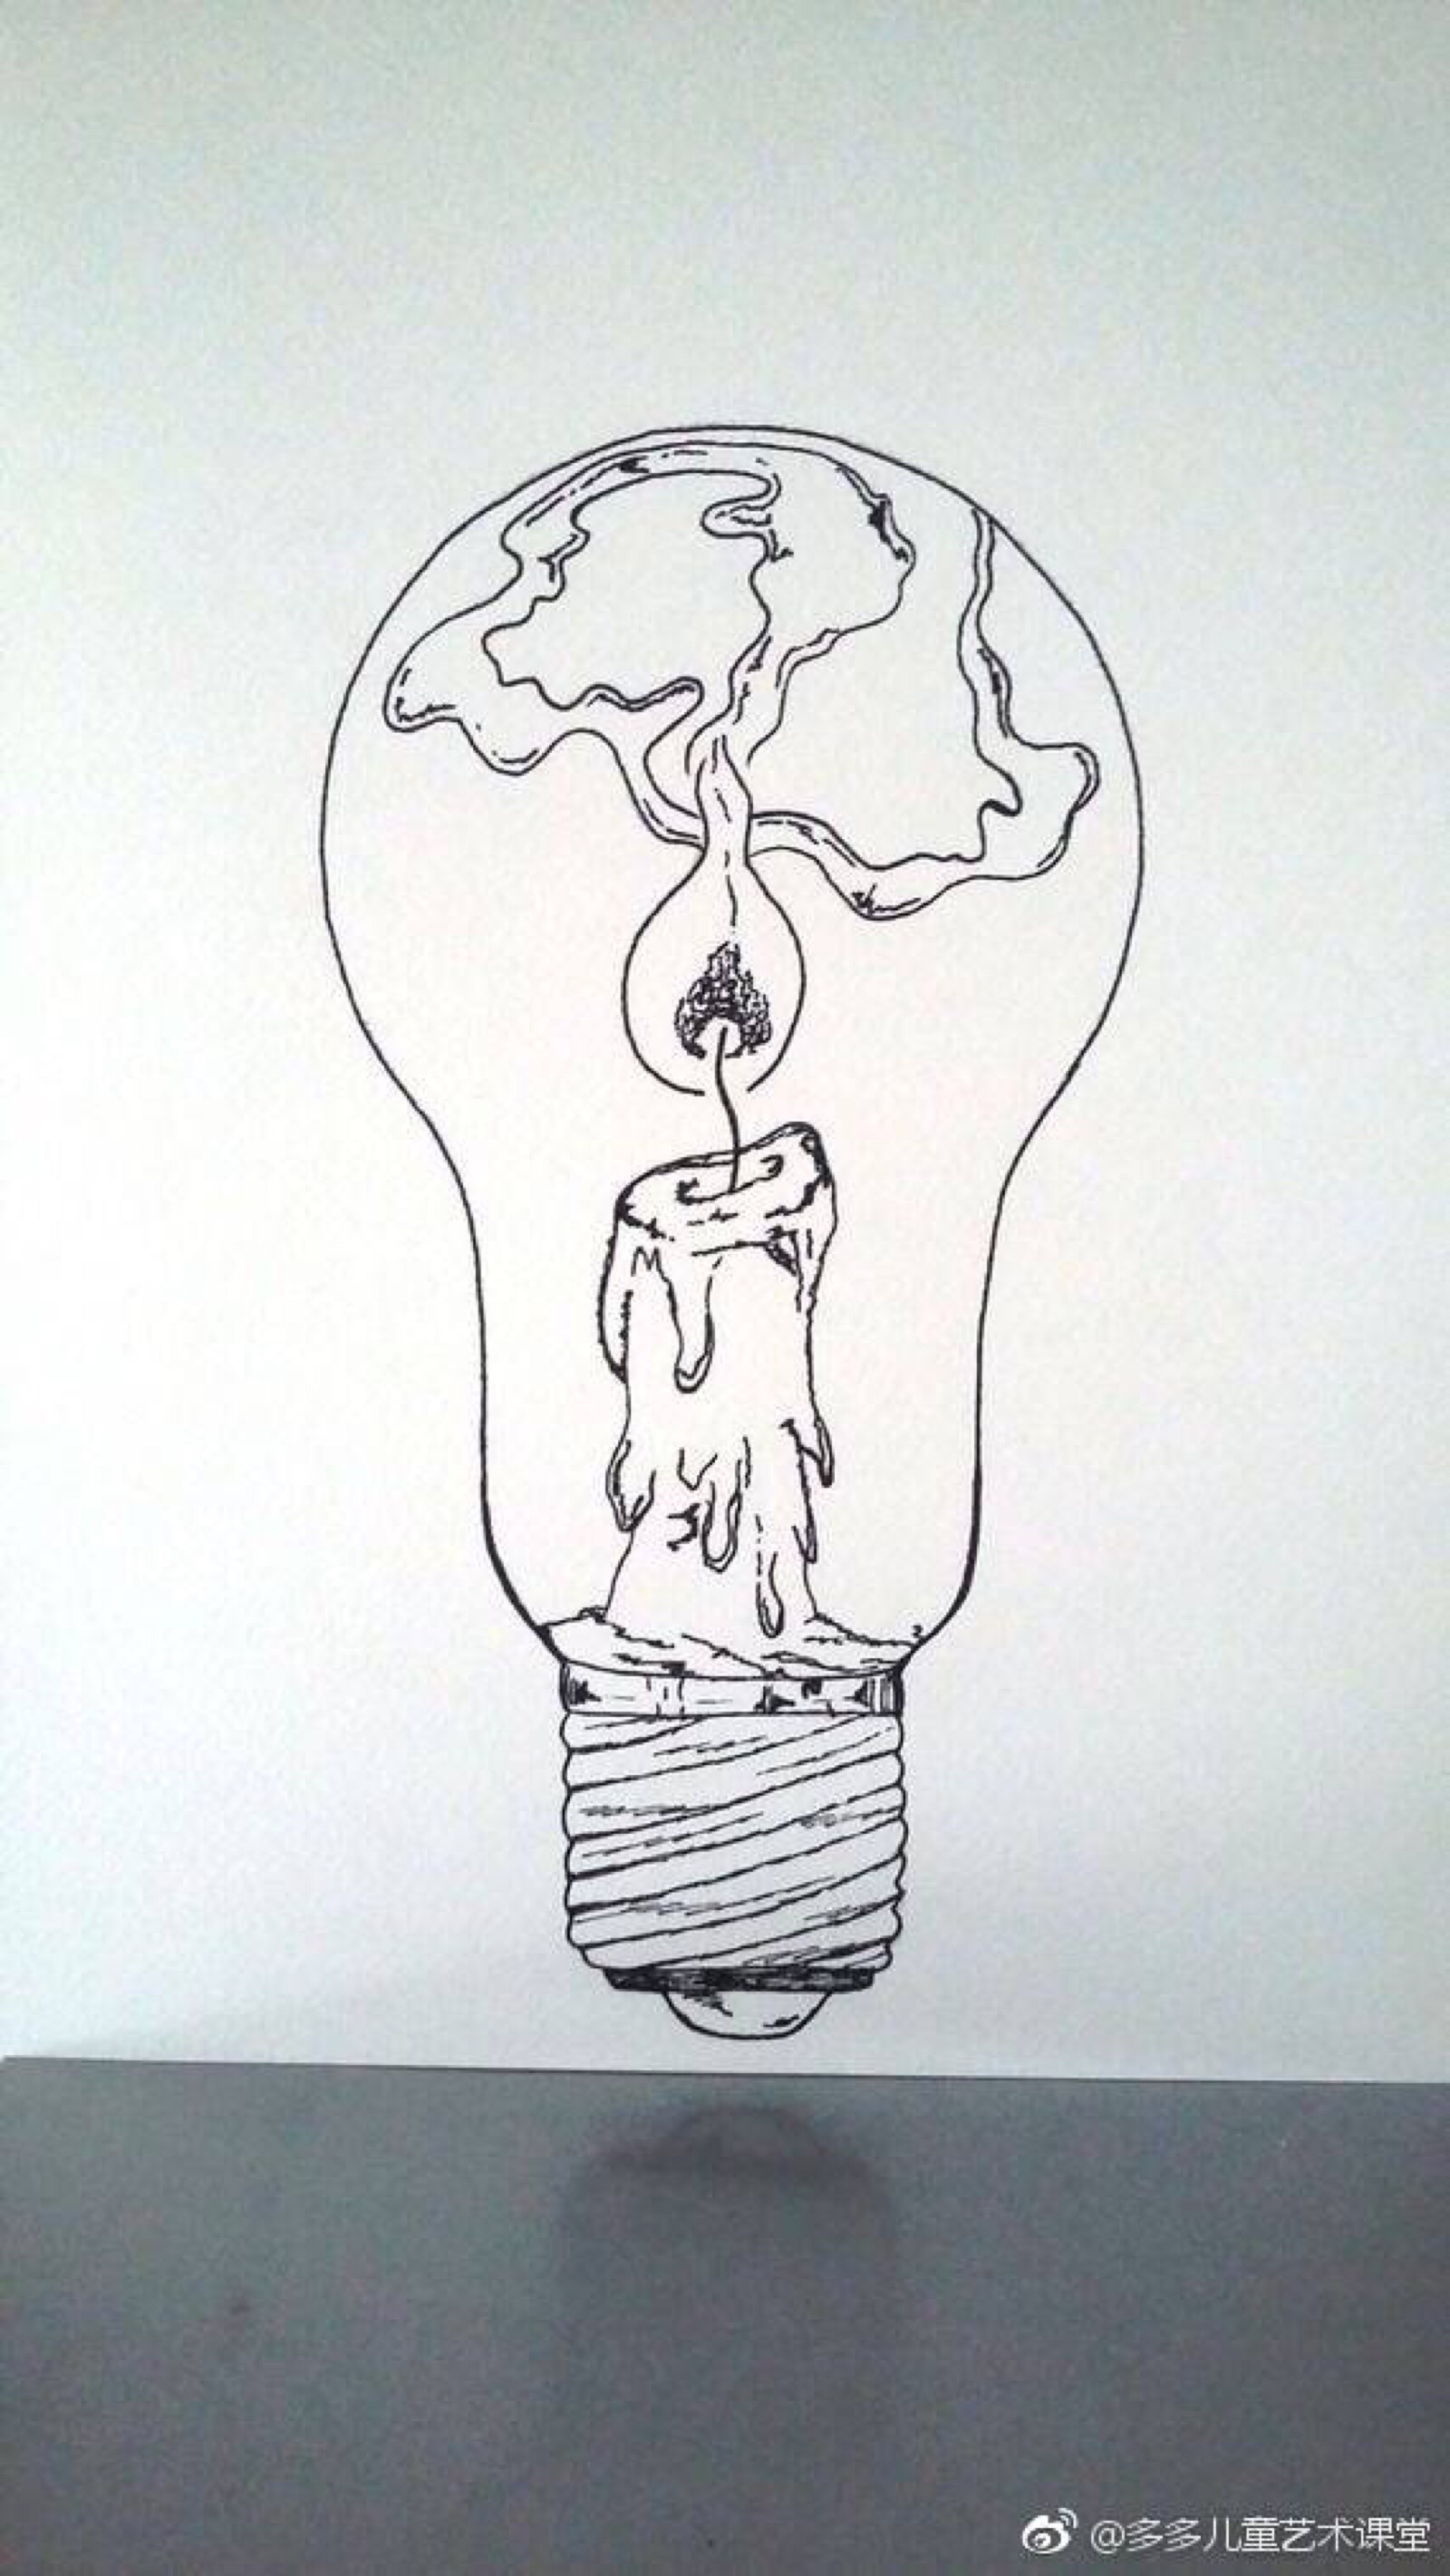 电灯泡联想创意设计图片